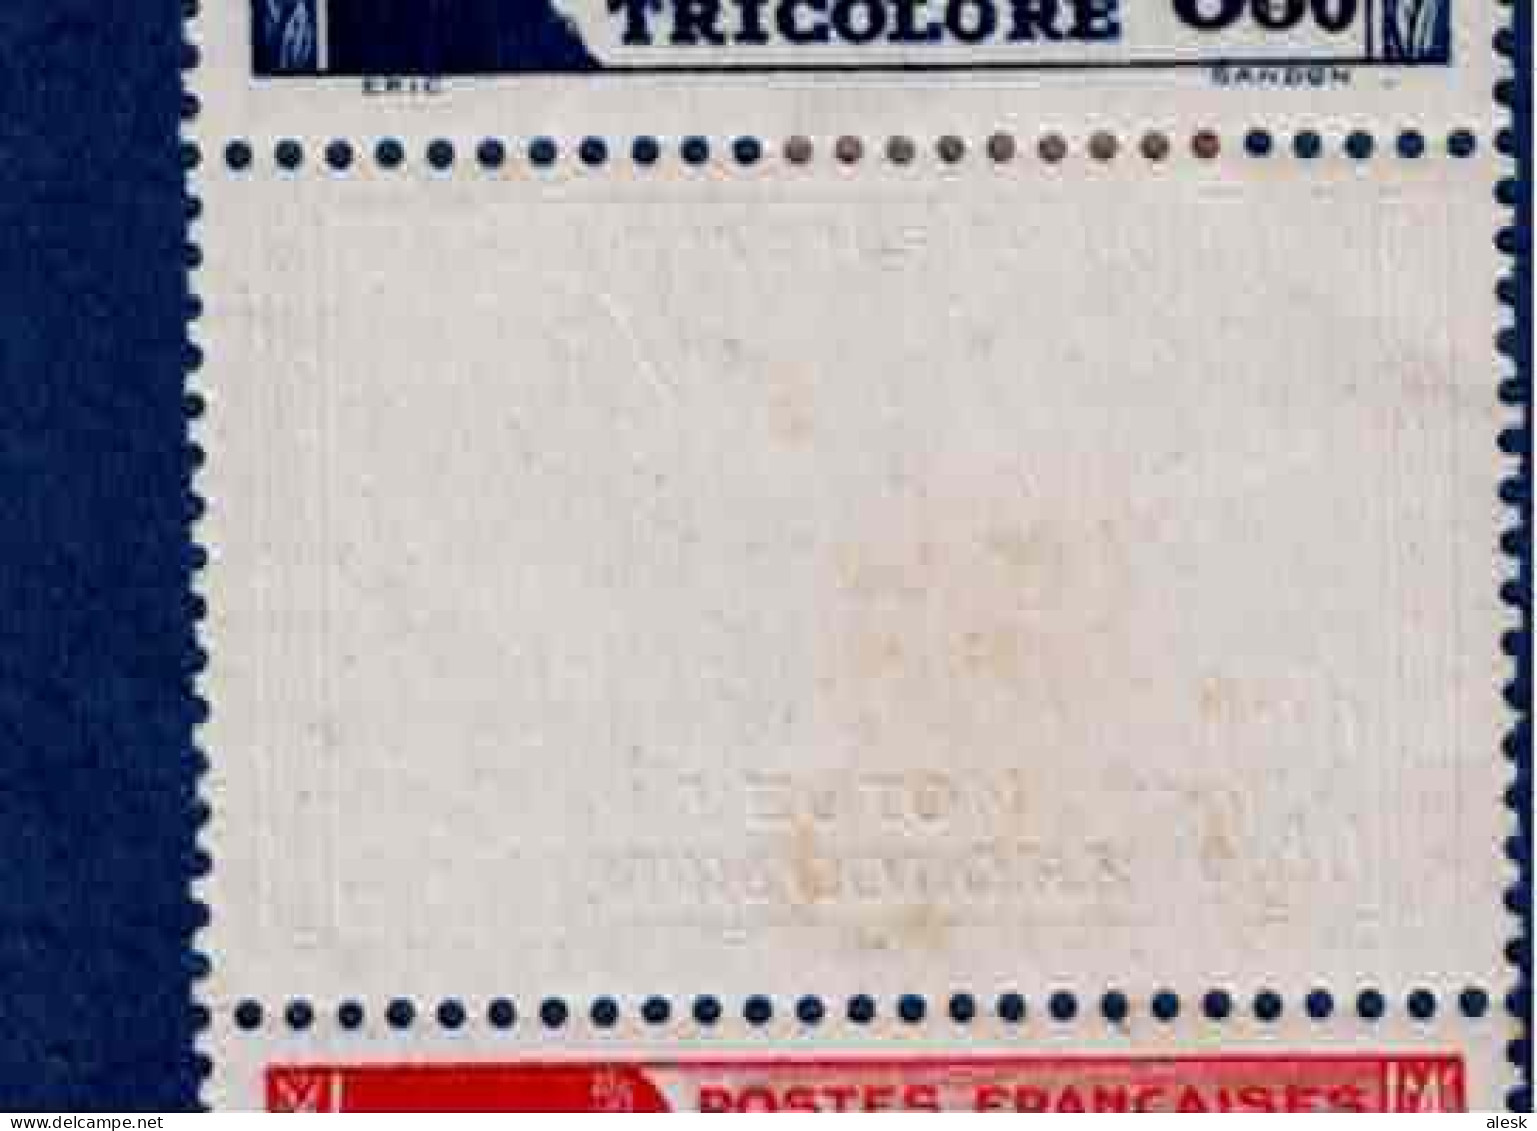 FRANCE N°565 + 566 (y&t) - Bande De 4 - 2+2 Avec Charnière - Pour La Légion Tricolore - 1942 - Ungebraucht